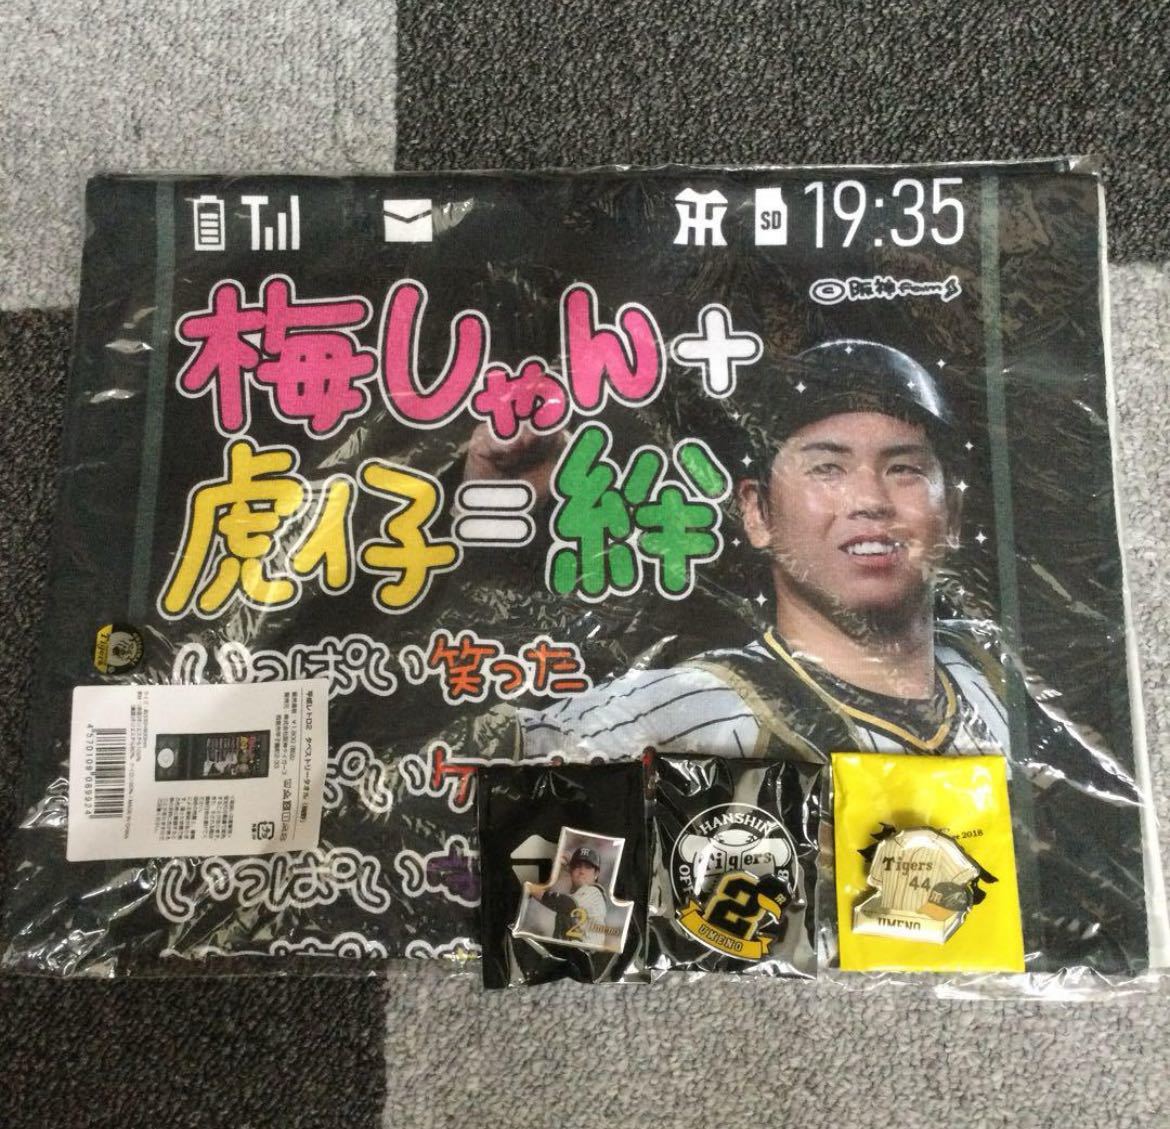 阪神タイガース 平成レトロ2 タペストリータオル 梅野選手 2 ピンバッジ_画像1